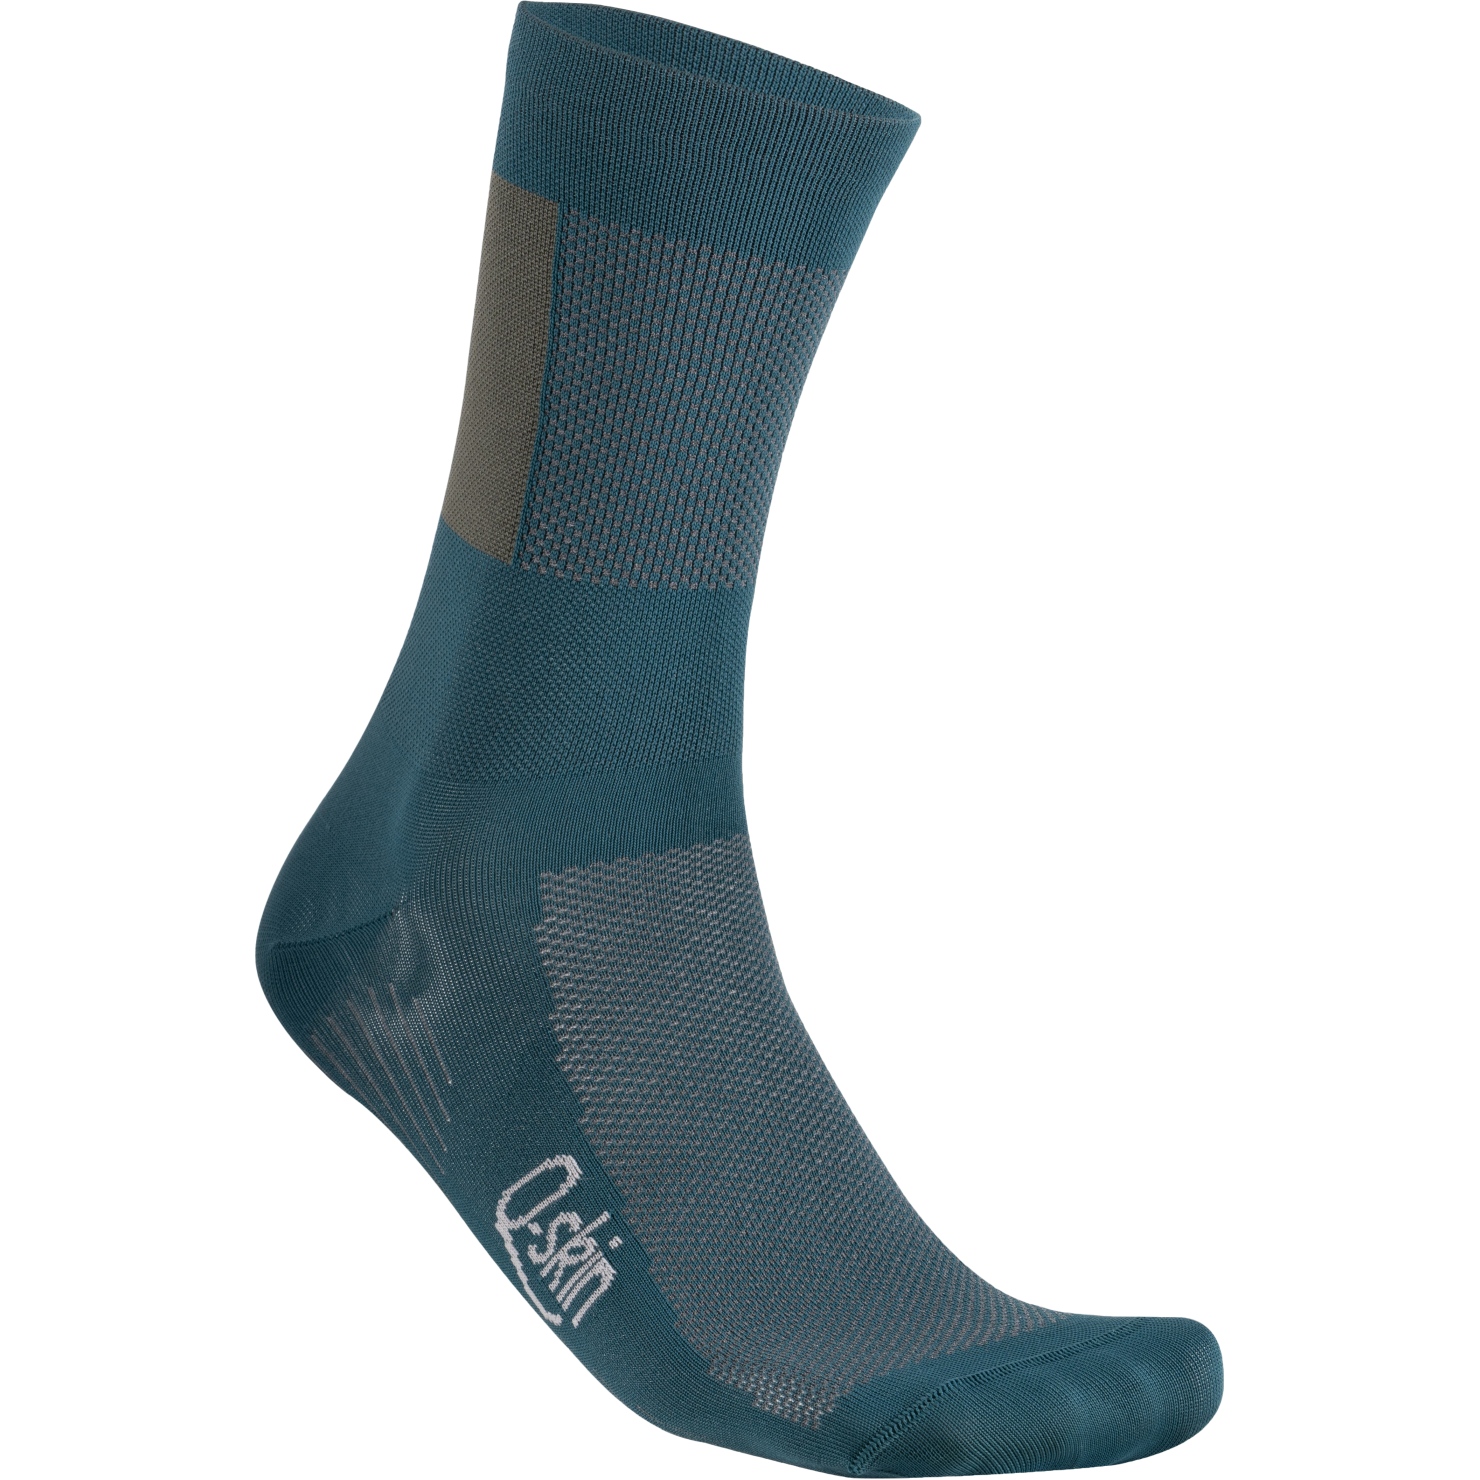 Produktbild von Sportful Snap Socken Herren - 374 Shade Spruce